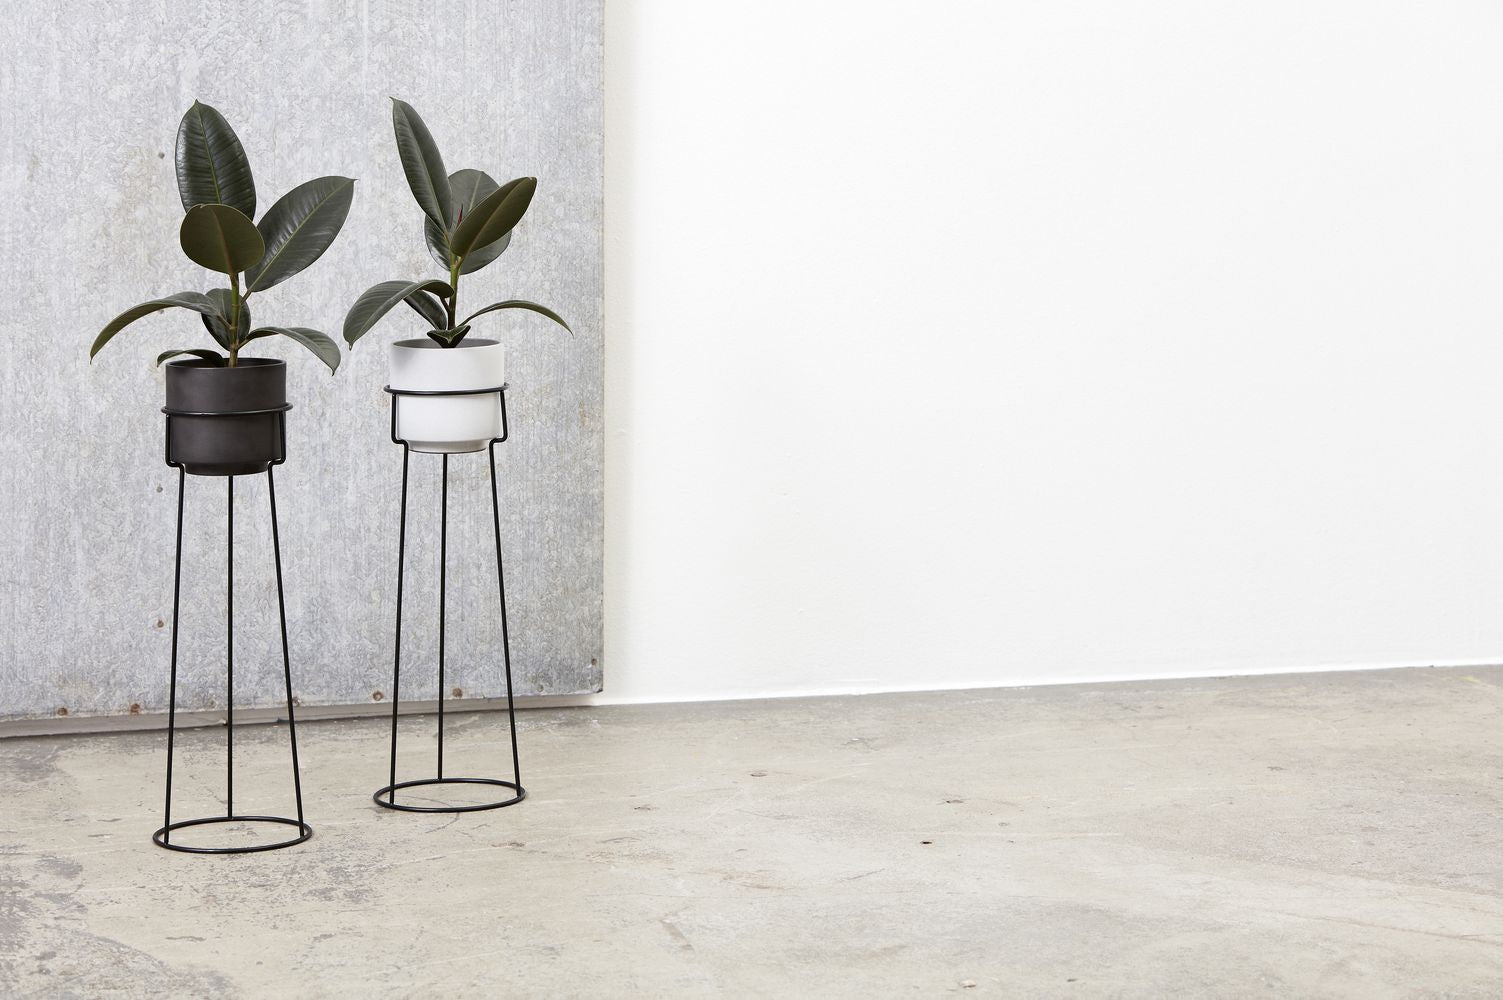 Andersen Furniture a Plant Flowerpot Hxø 12x13,3 cm, grigio